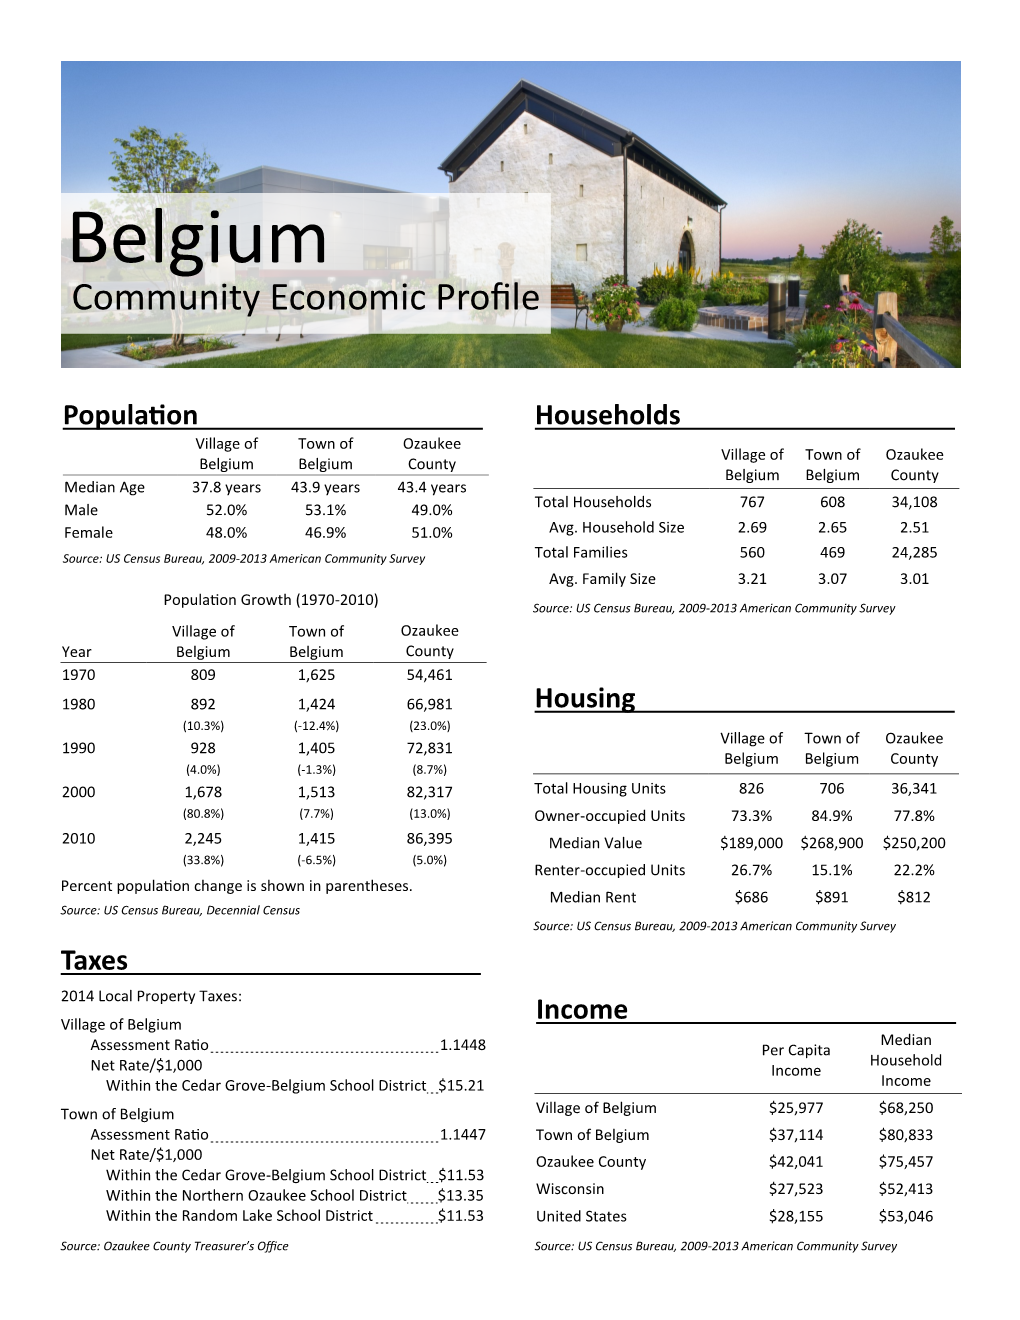 Belgium Community Economic Profile